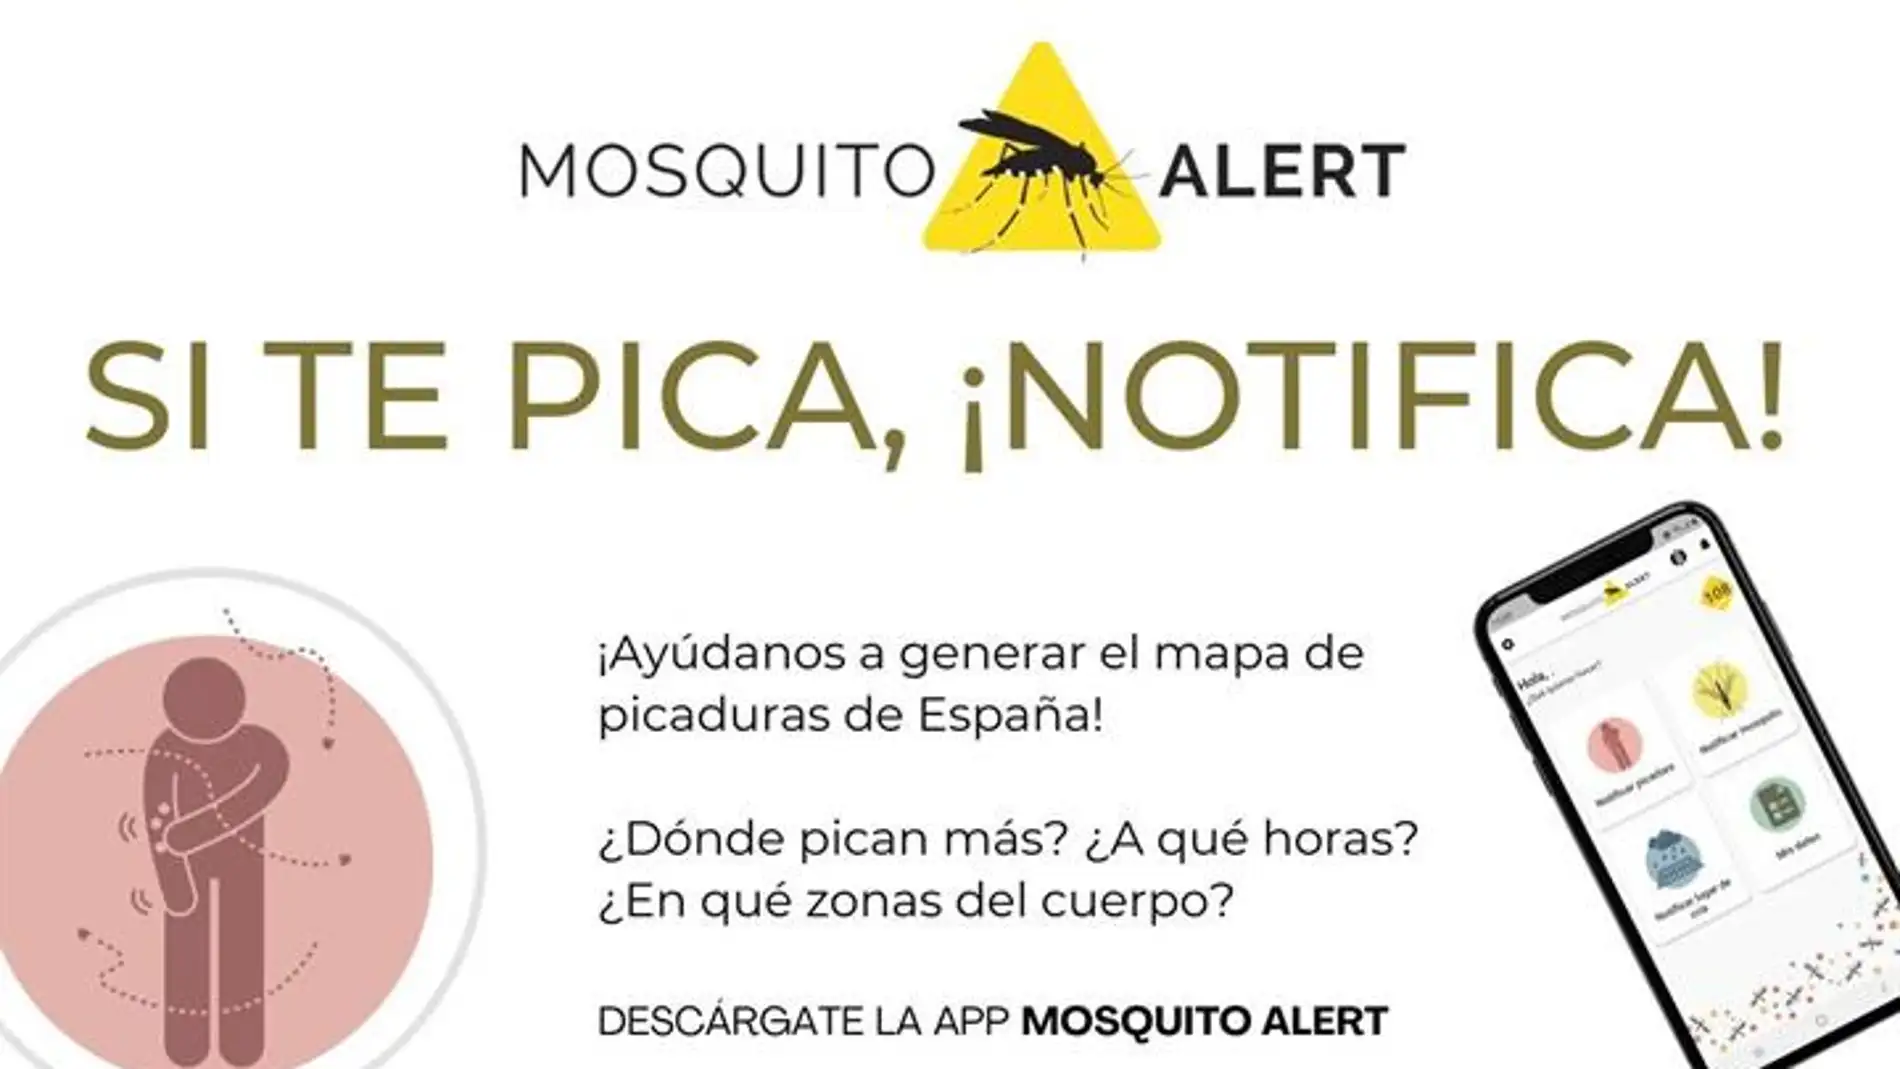 'Si te pica, ¡notifica!', la nueva aplicación de Sanidad para vigilar los mosquitos